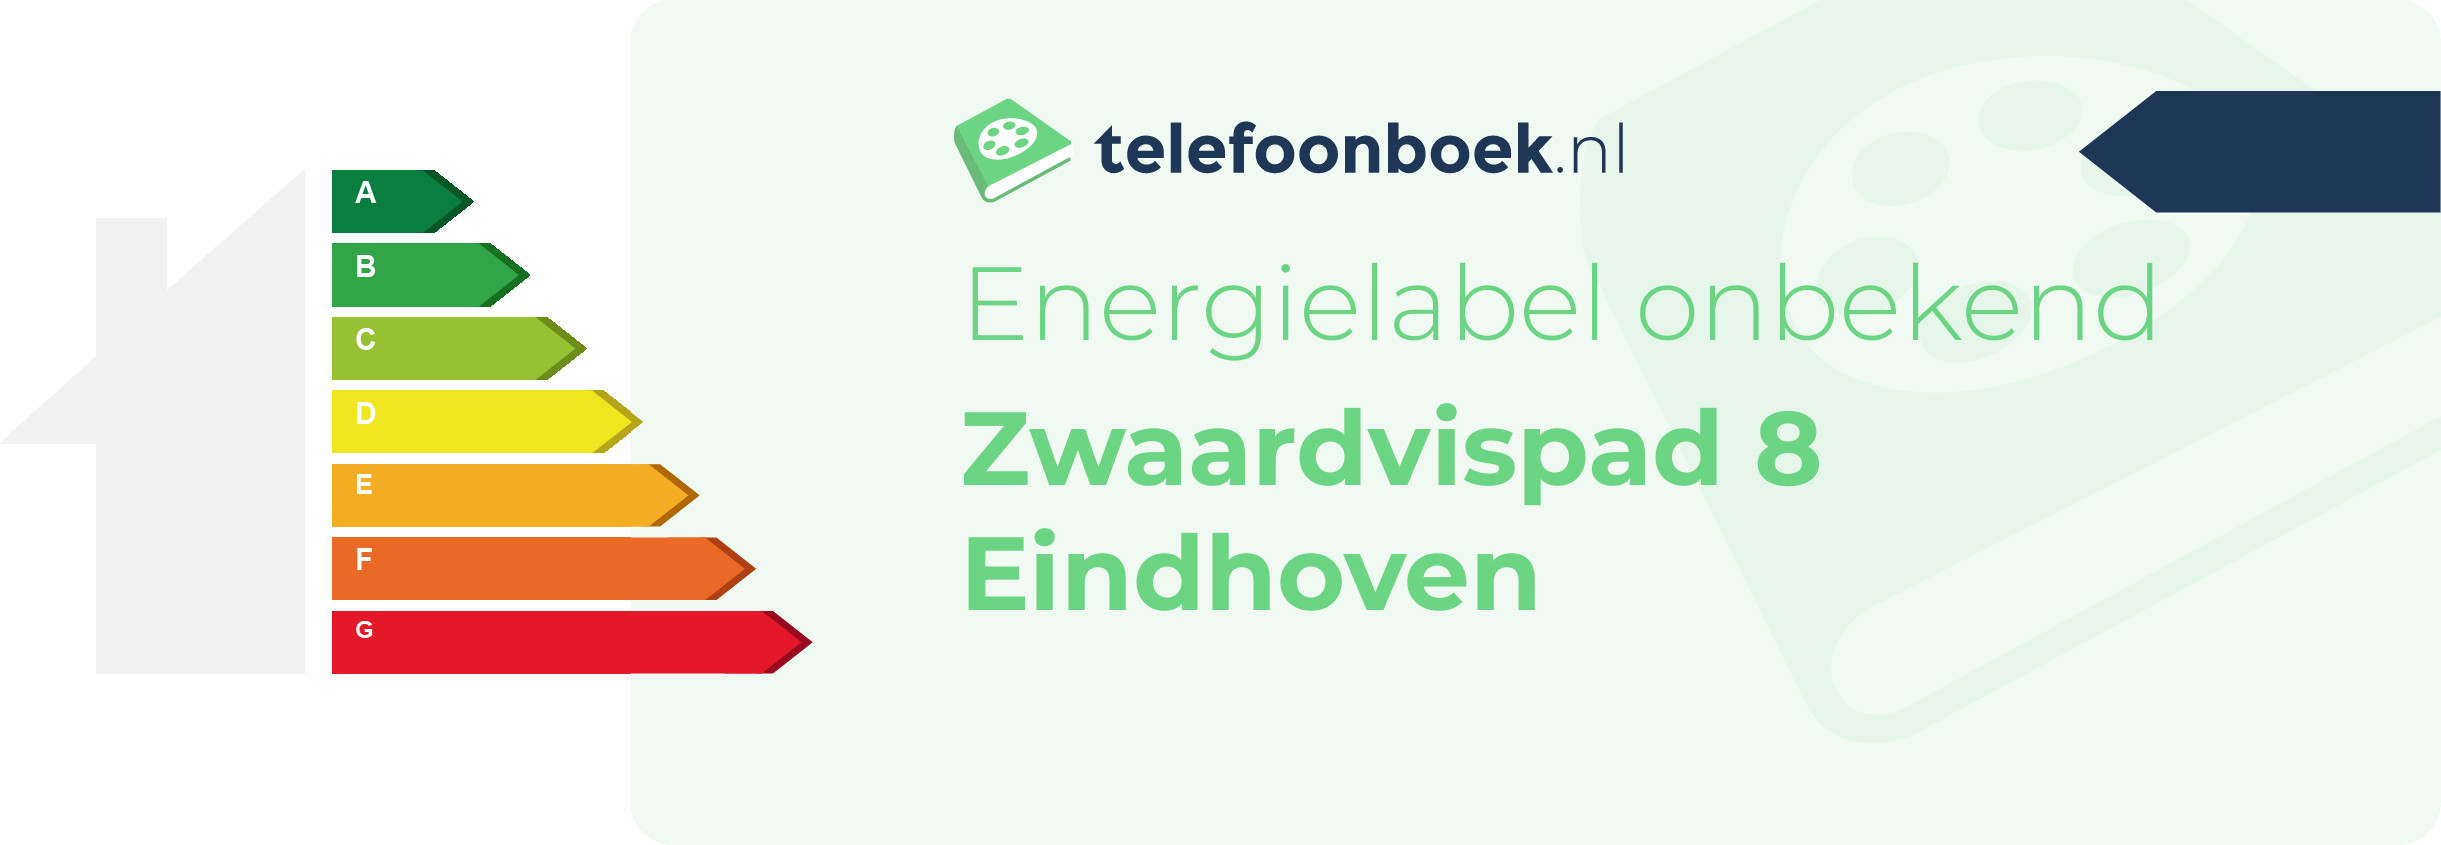 Energielabel Zwaardvispad 8 Eindhoven